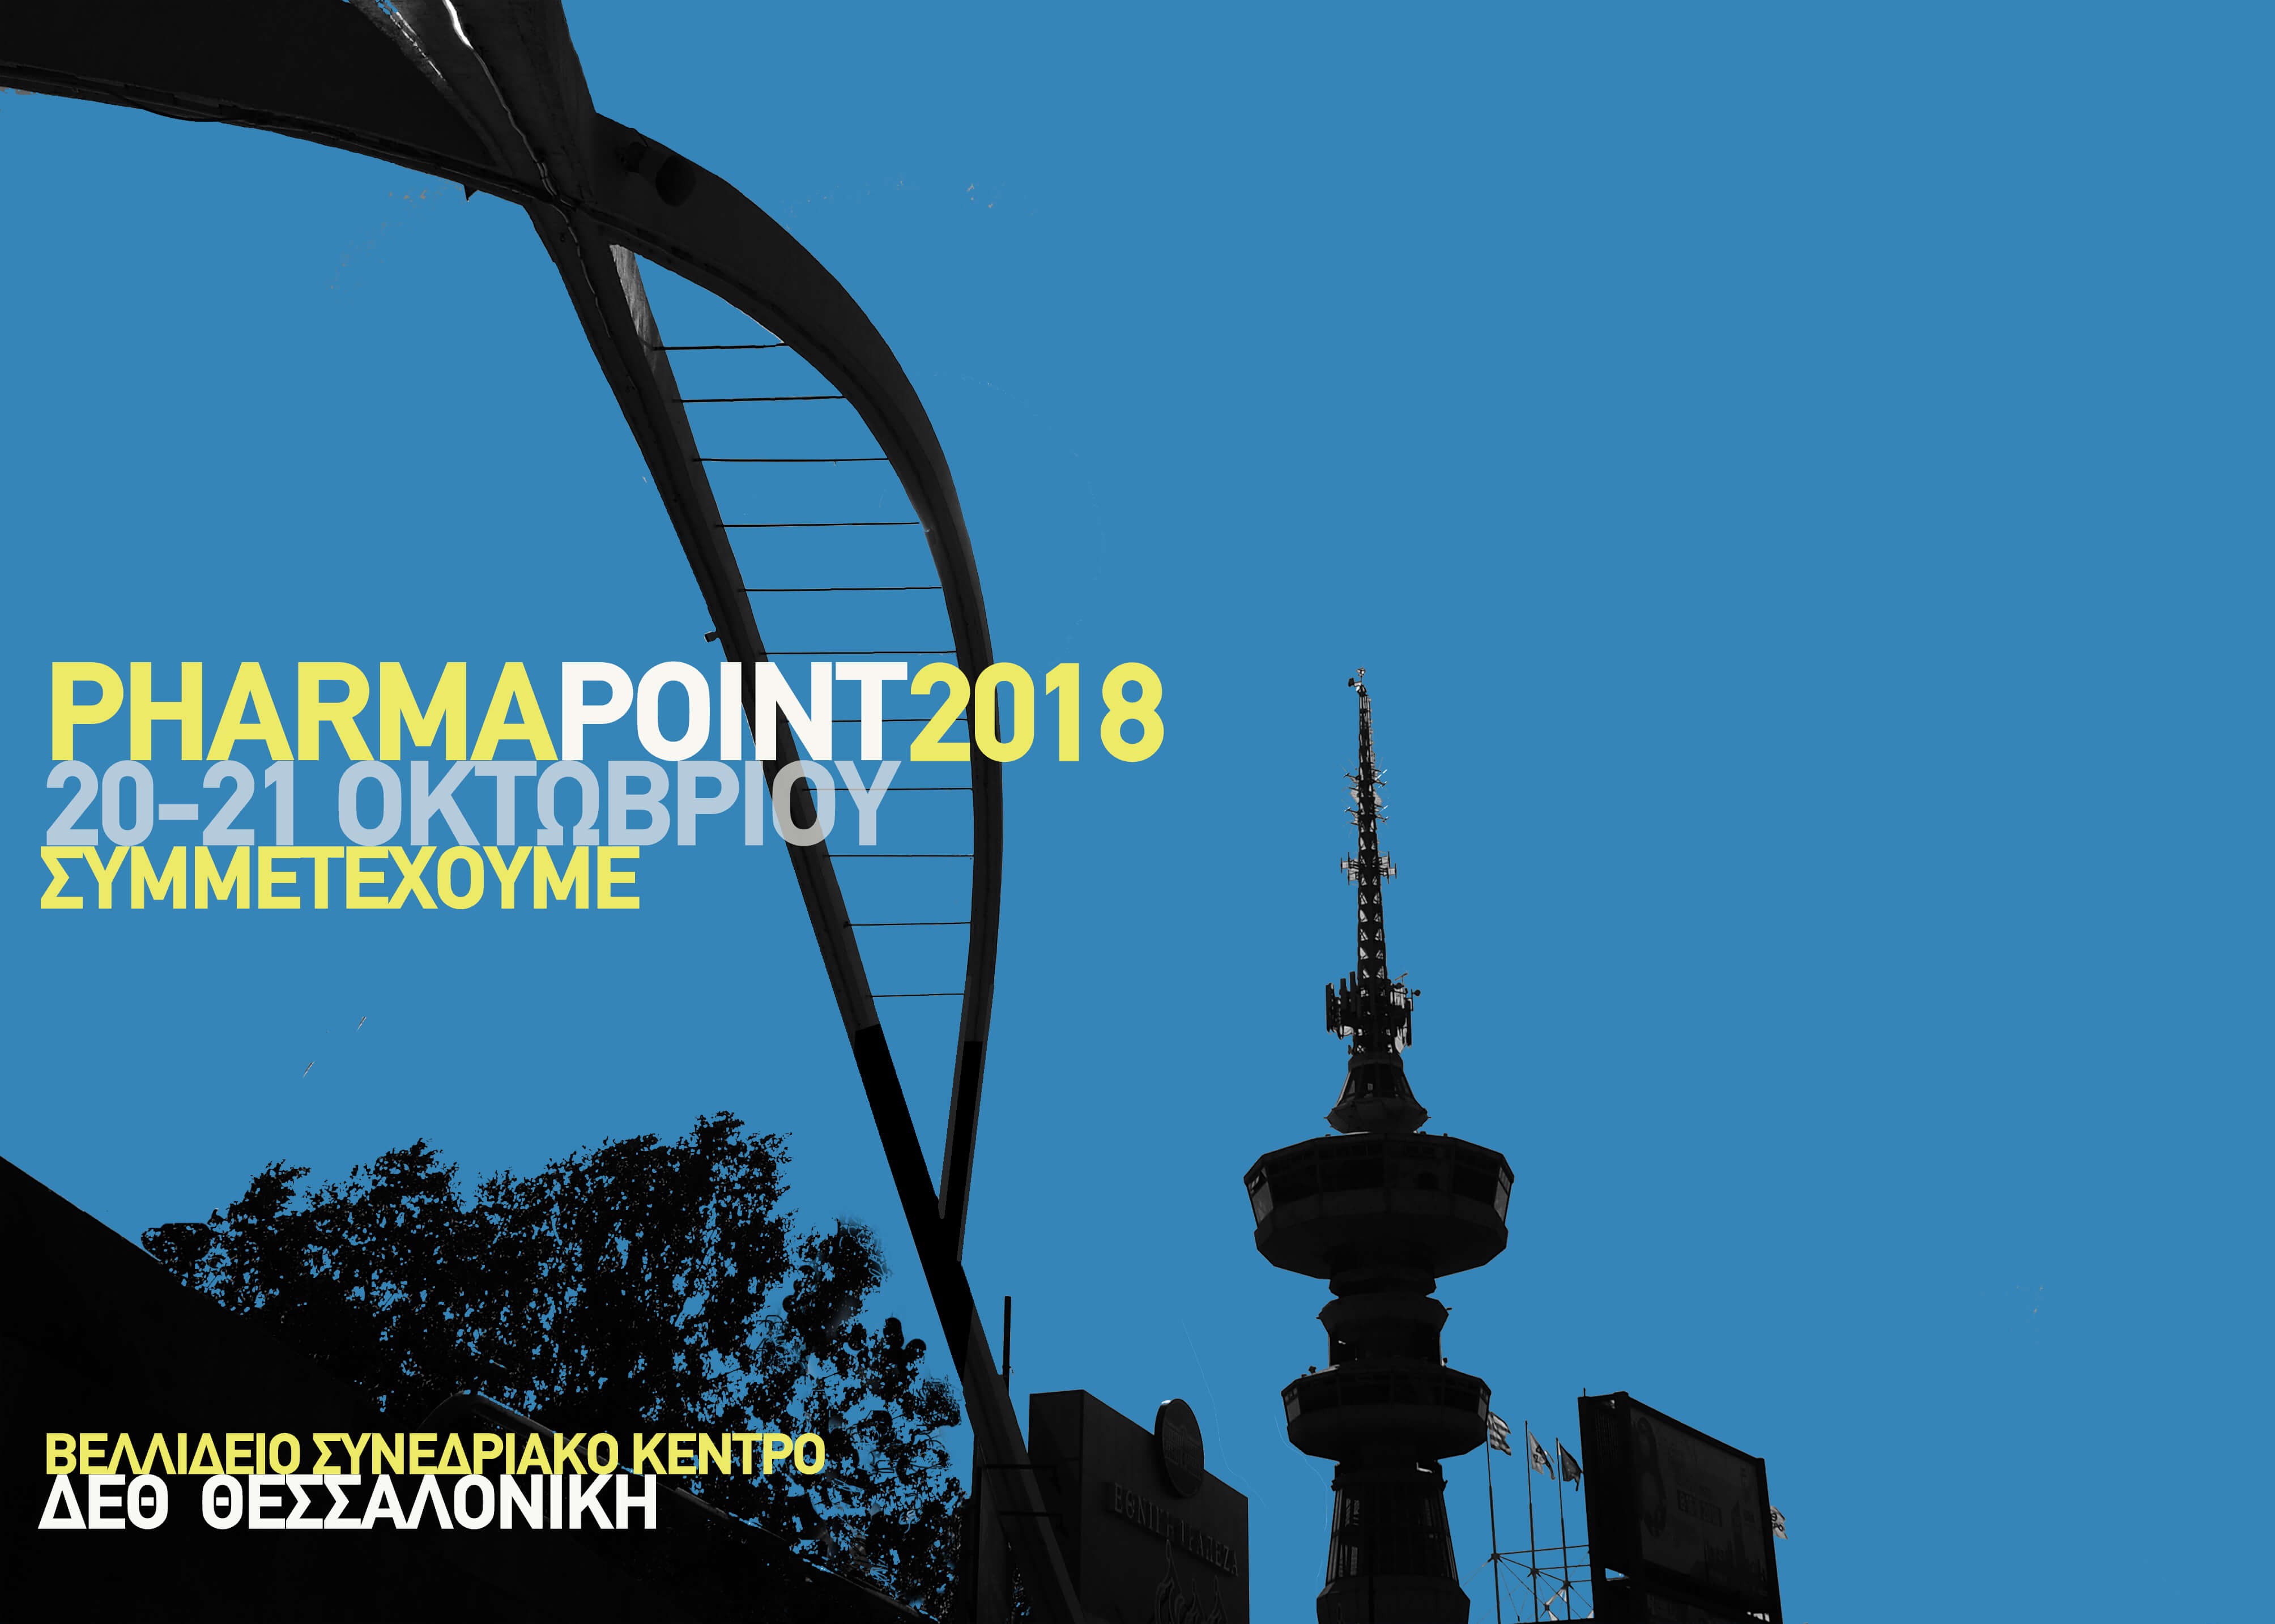 Συμμετοχή στο 18ο PHARMApoint, Θεσσαλονίκη 20-21 Οκτωβρίου 2018